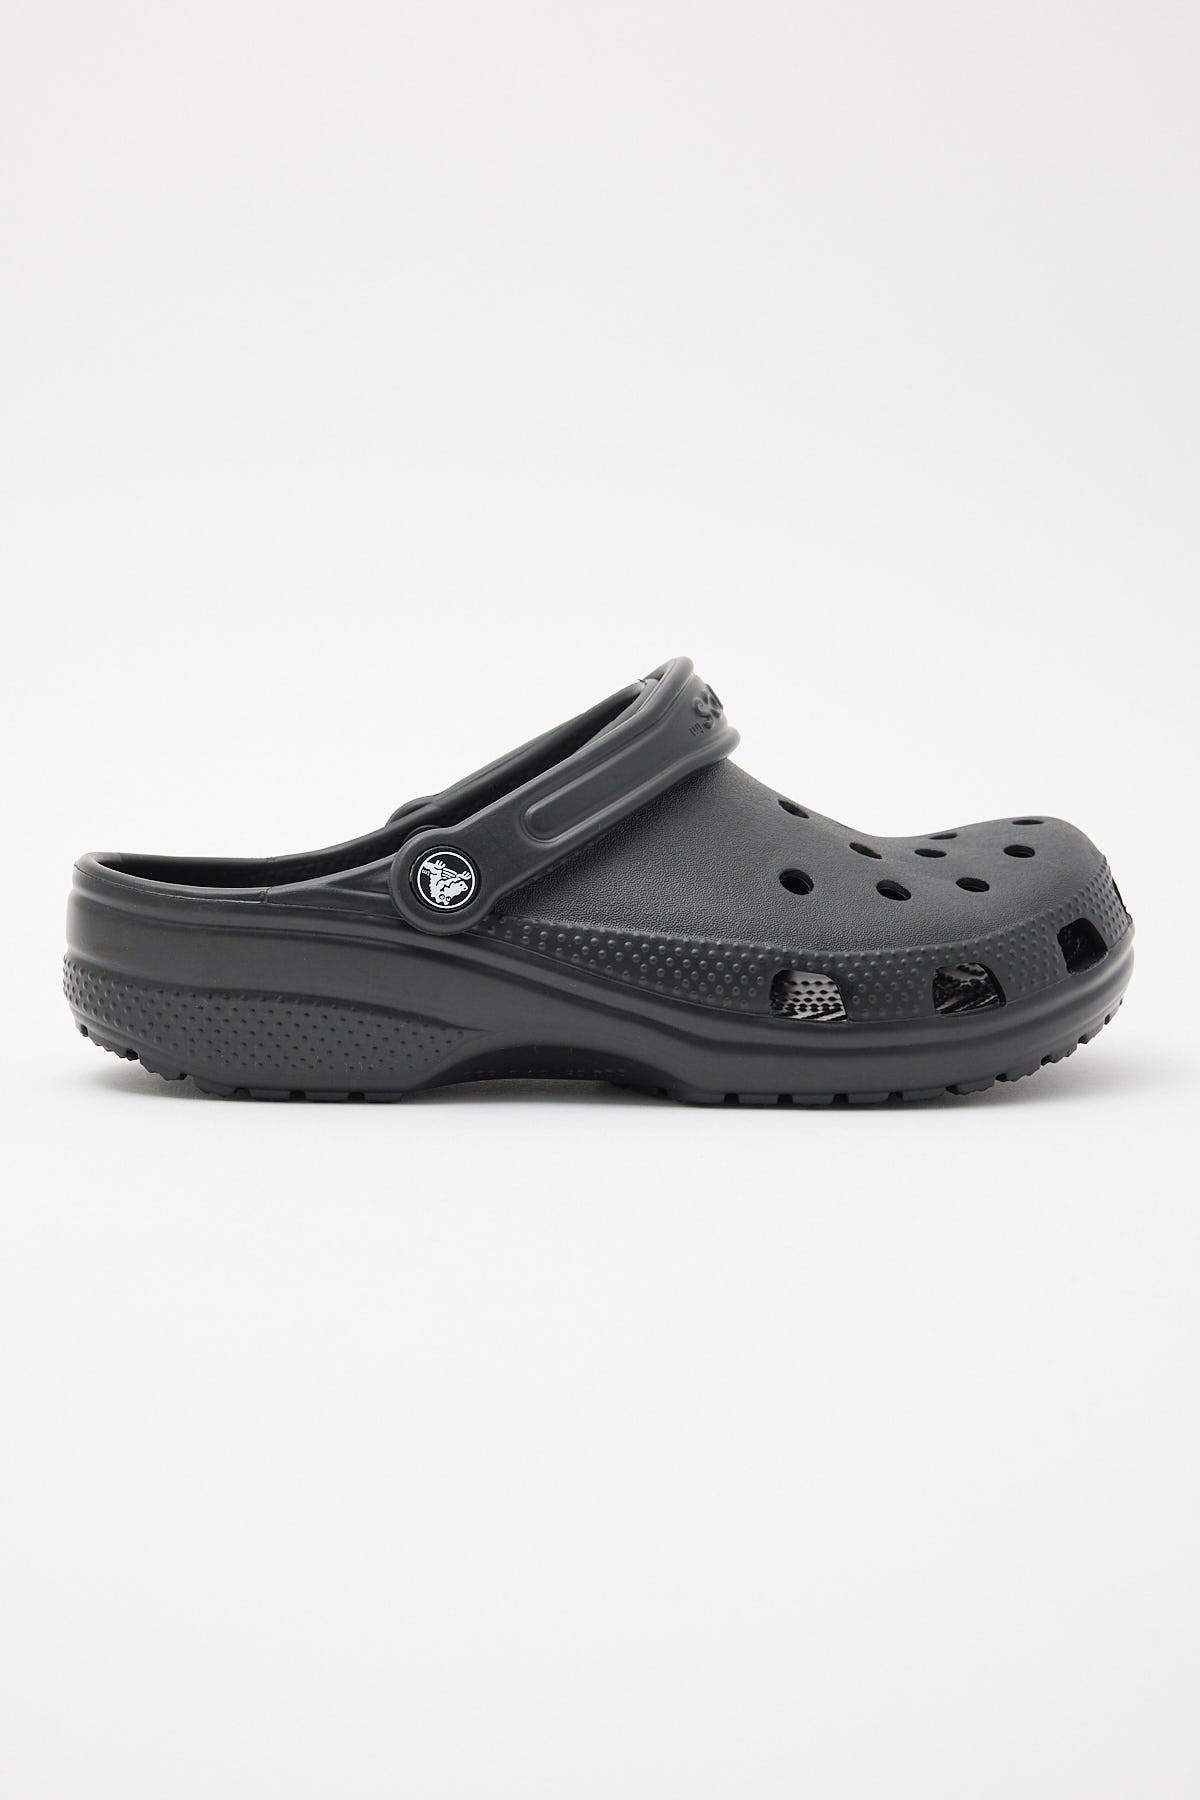 Crocs Mens Classic Black